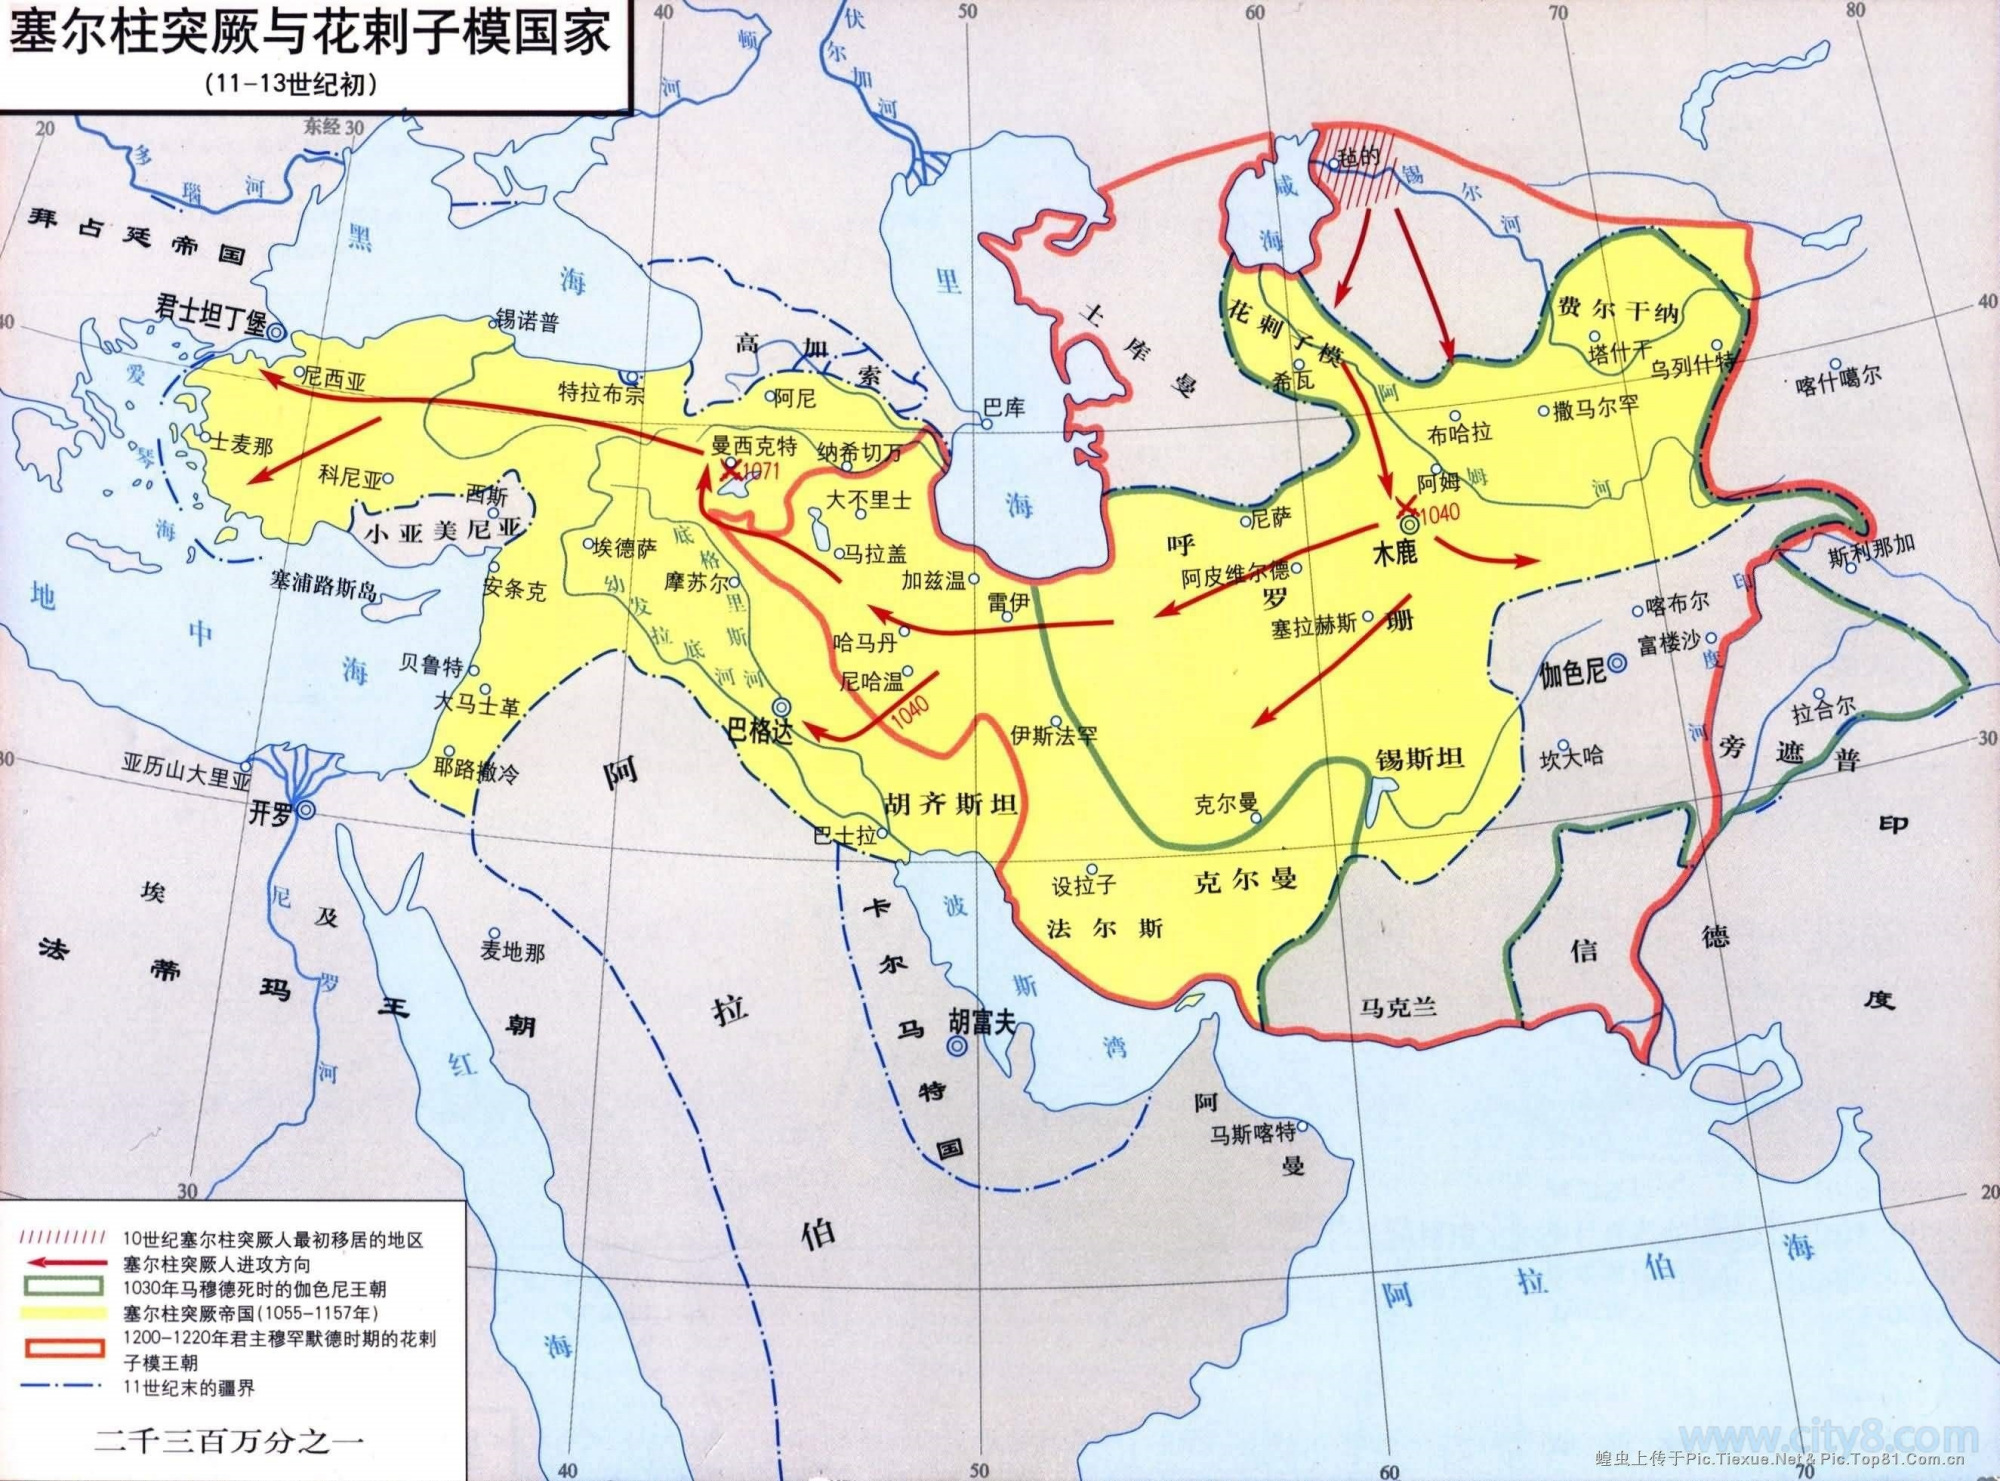 (花剌子模)花剌子模国,曾经与蒙古帝国产生战争,当时花剌子模把将领称